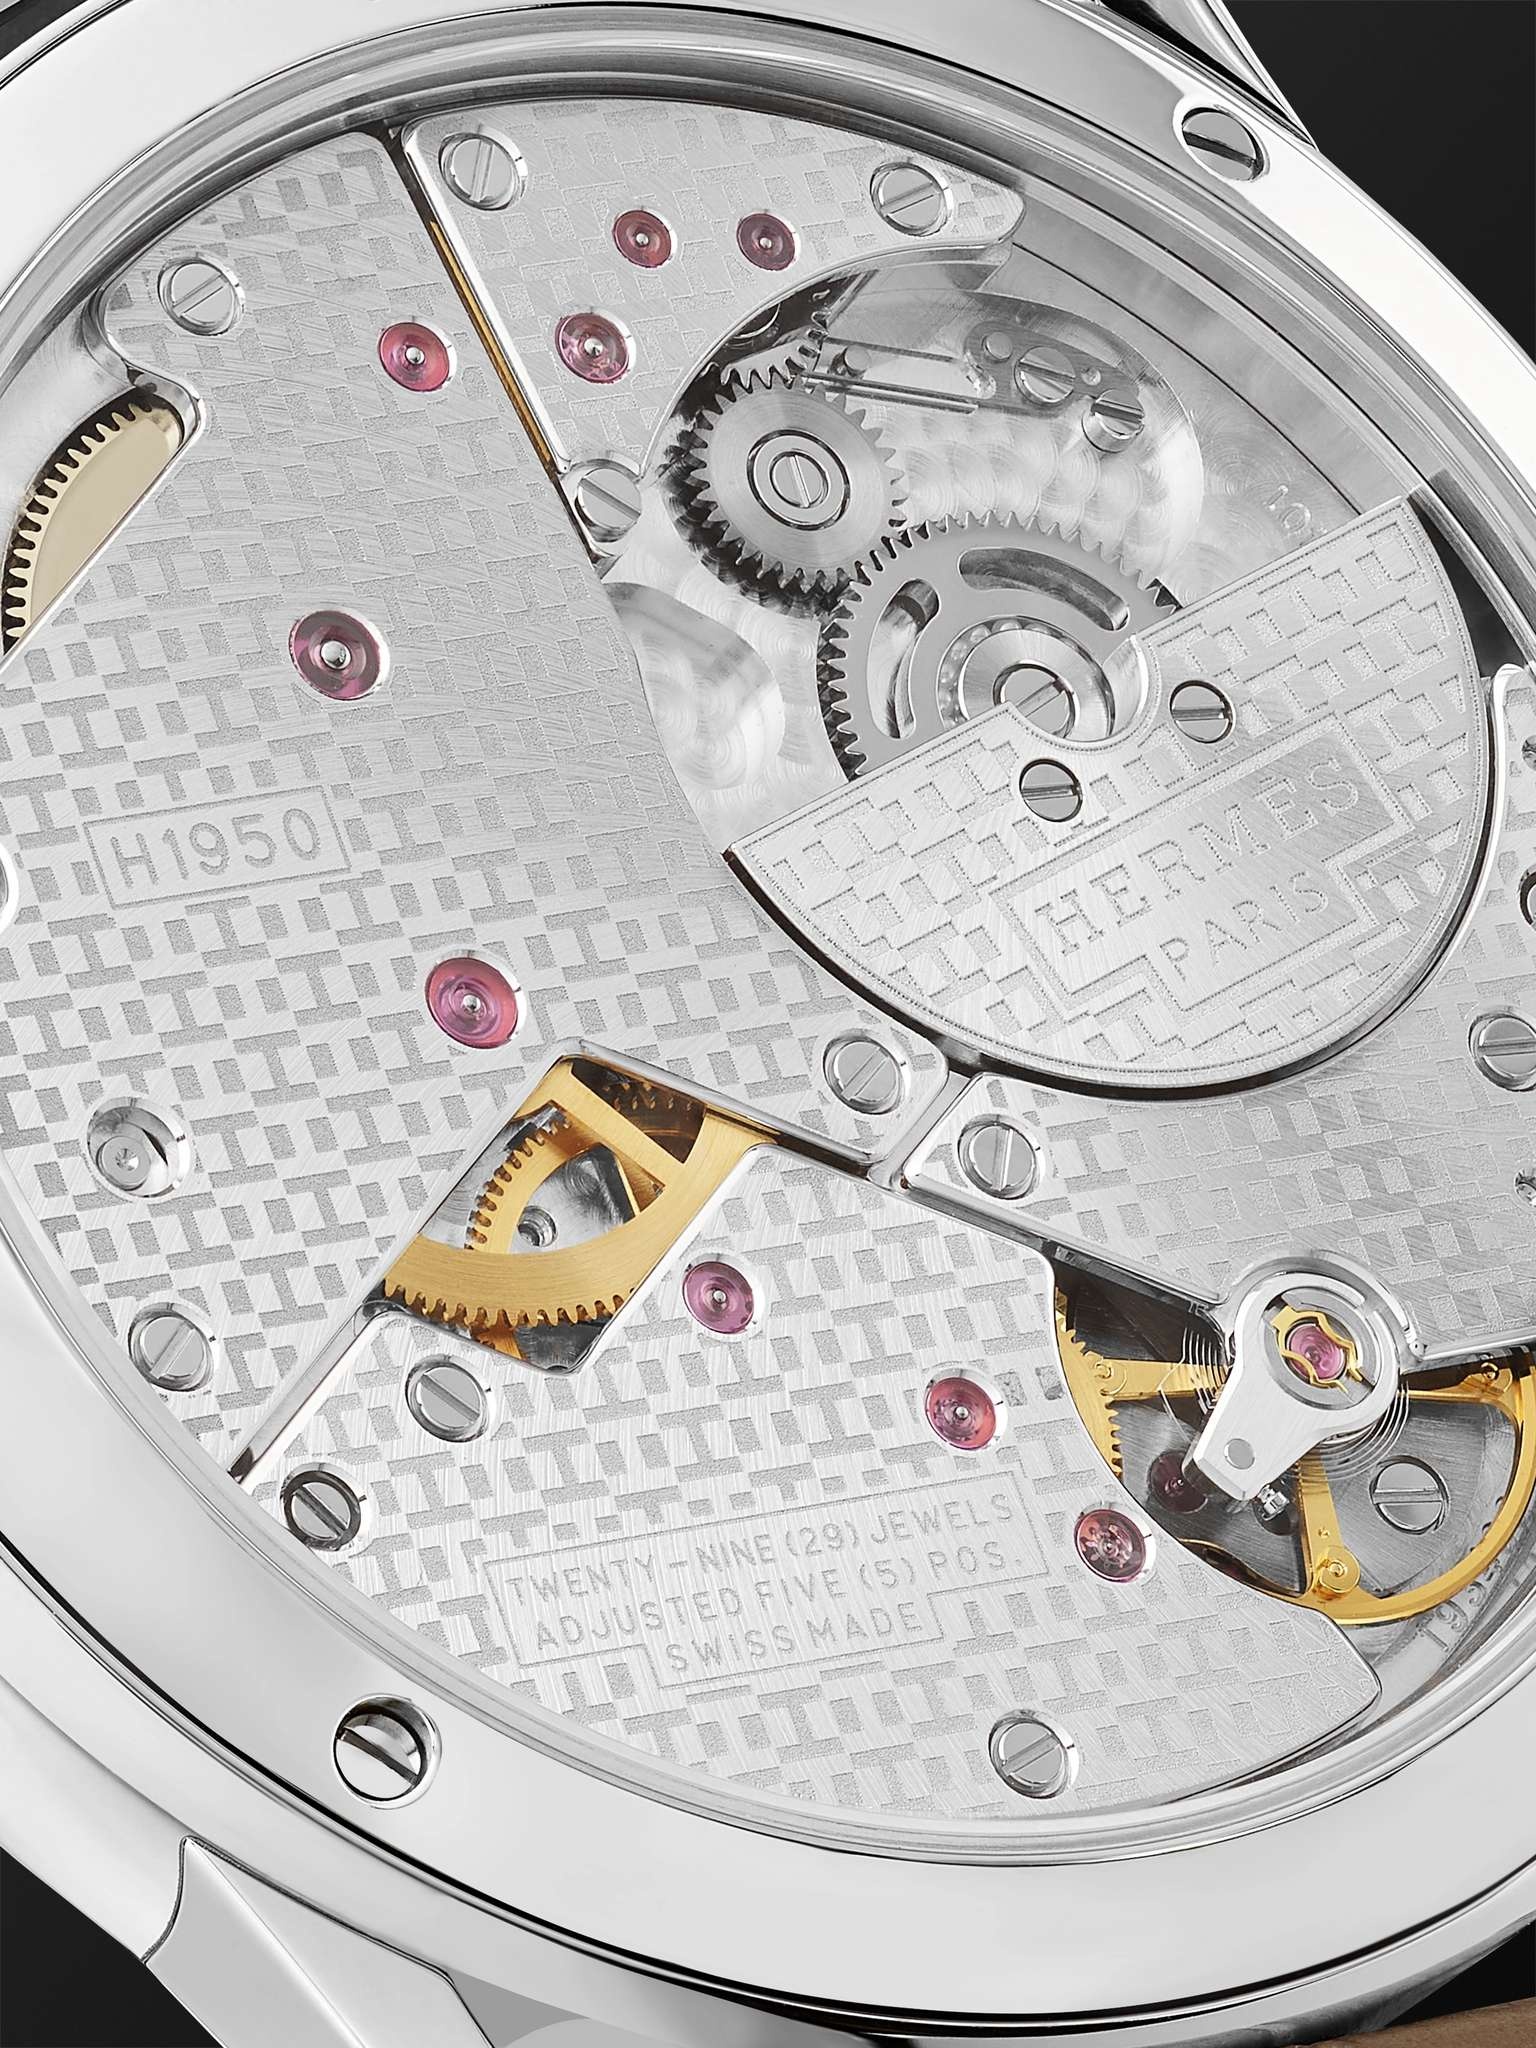 Slim d'Hermès Acier Automatic 39.5mm Stainless Steel and Alligator Watch, Ref. No. W045266WW00 - 3